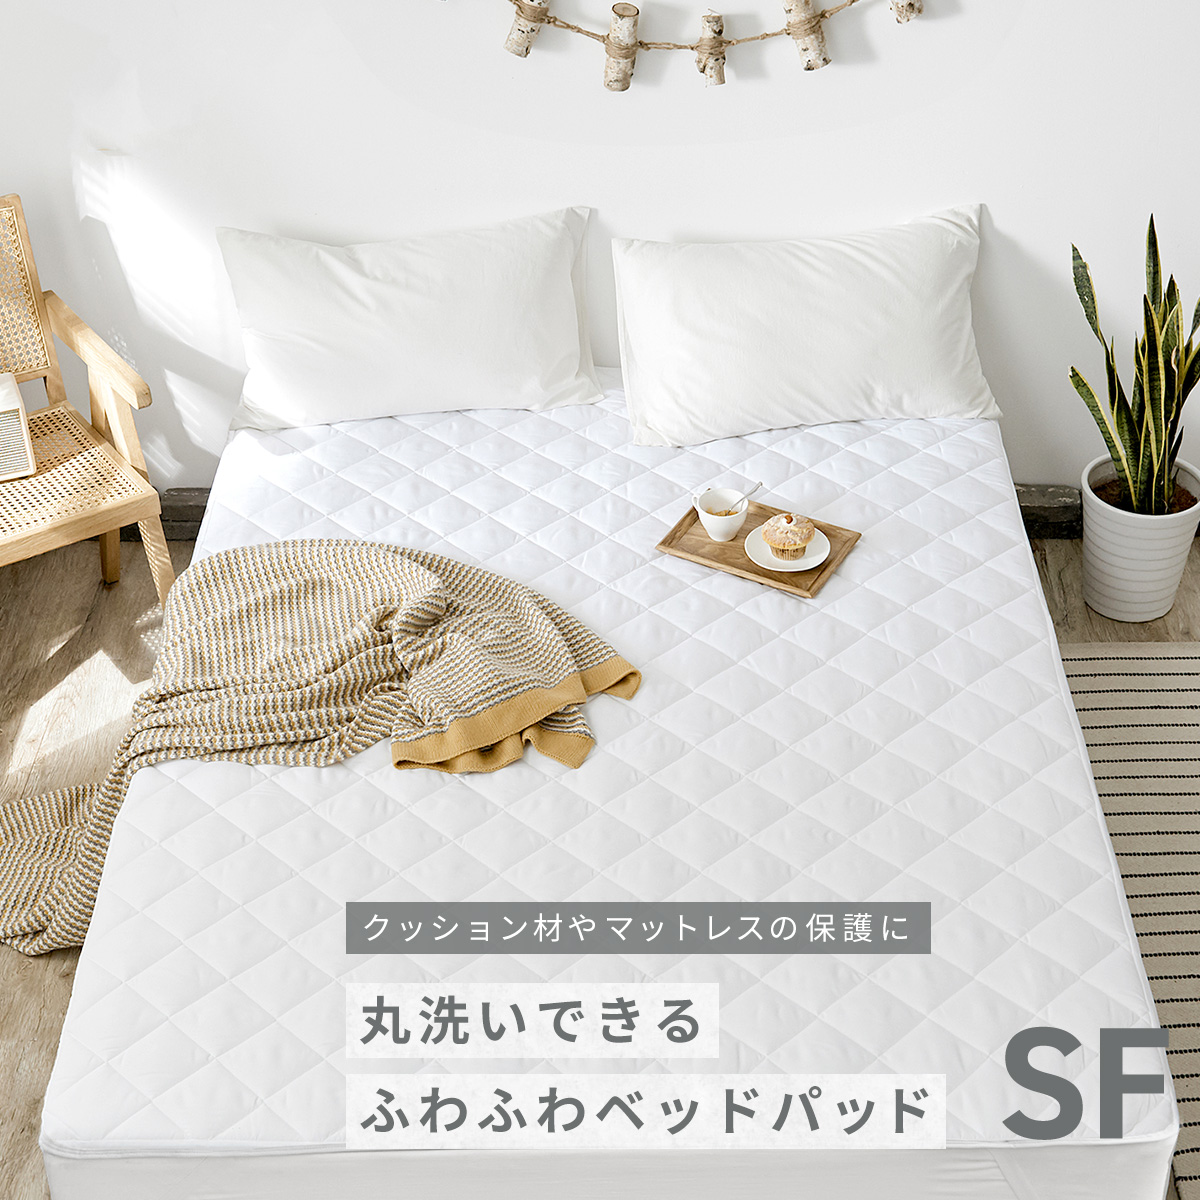 ベッドパッド セミファミリー 洗える 敷きパッド ベットパット 220×200cm 送料無料 新生活